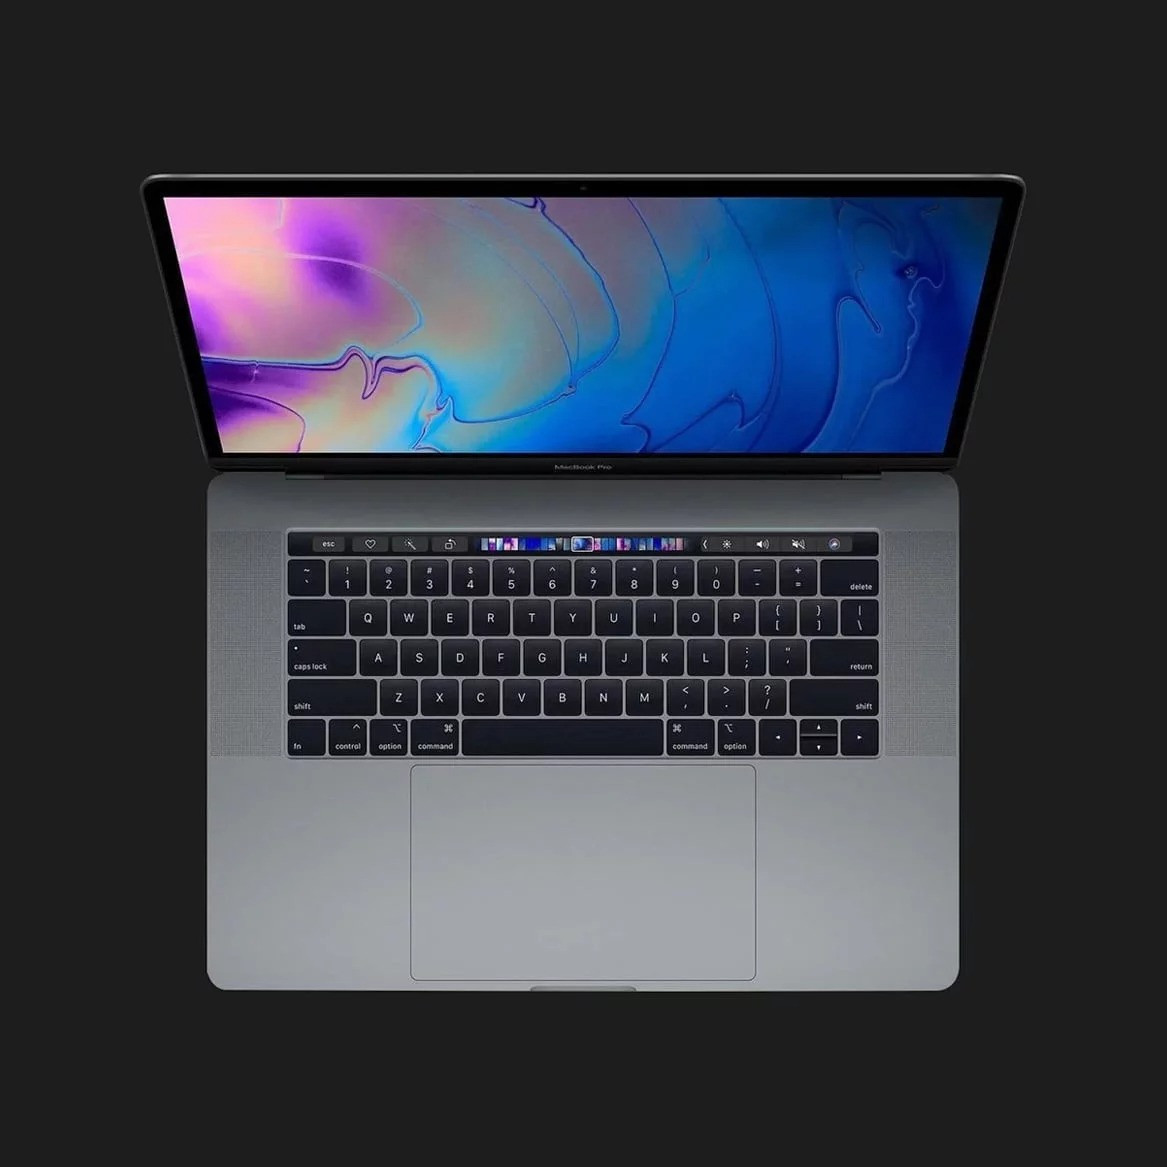 б/у Apple MacBook Pro 15, 2019 (512GB) (MV912) (Середній стан)